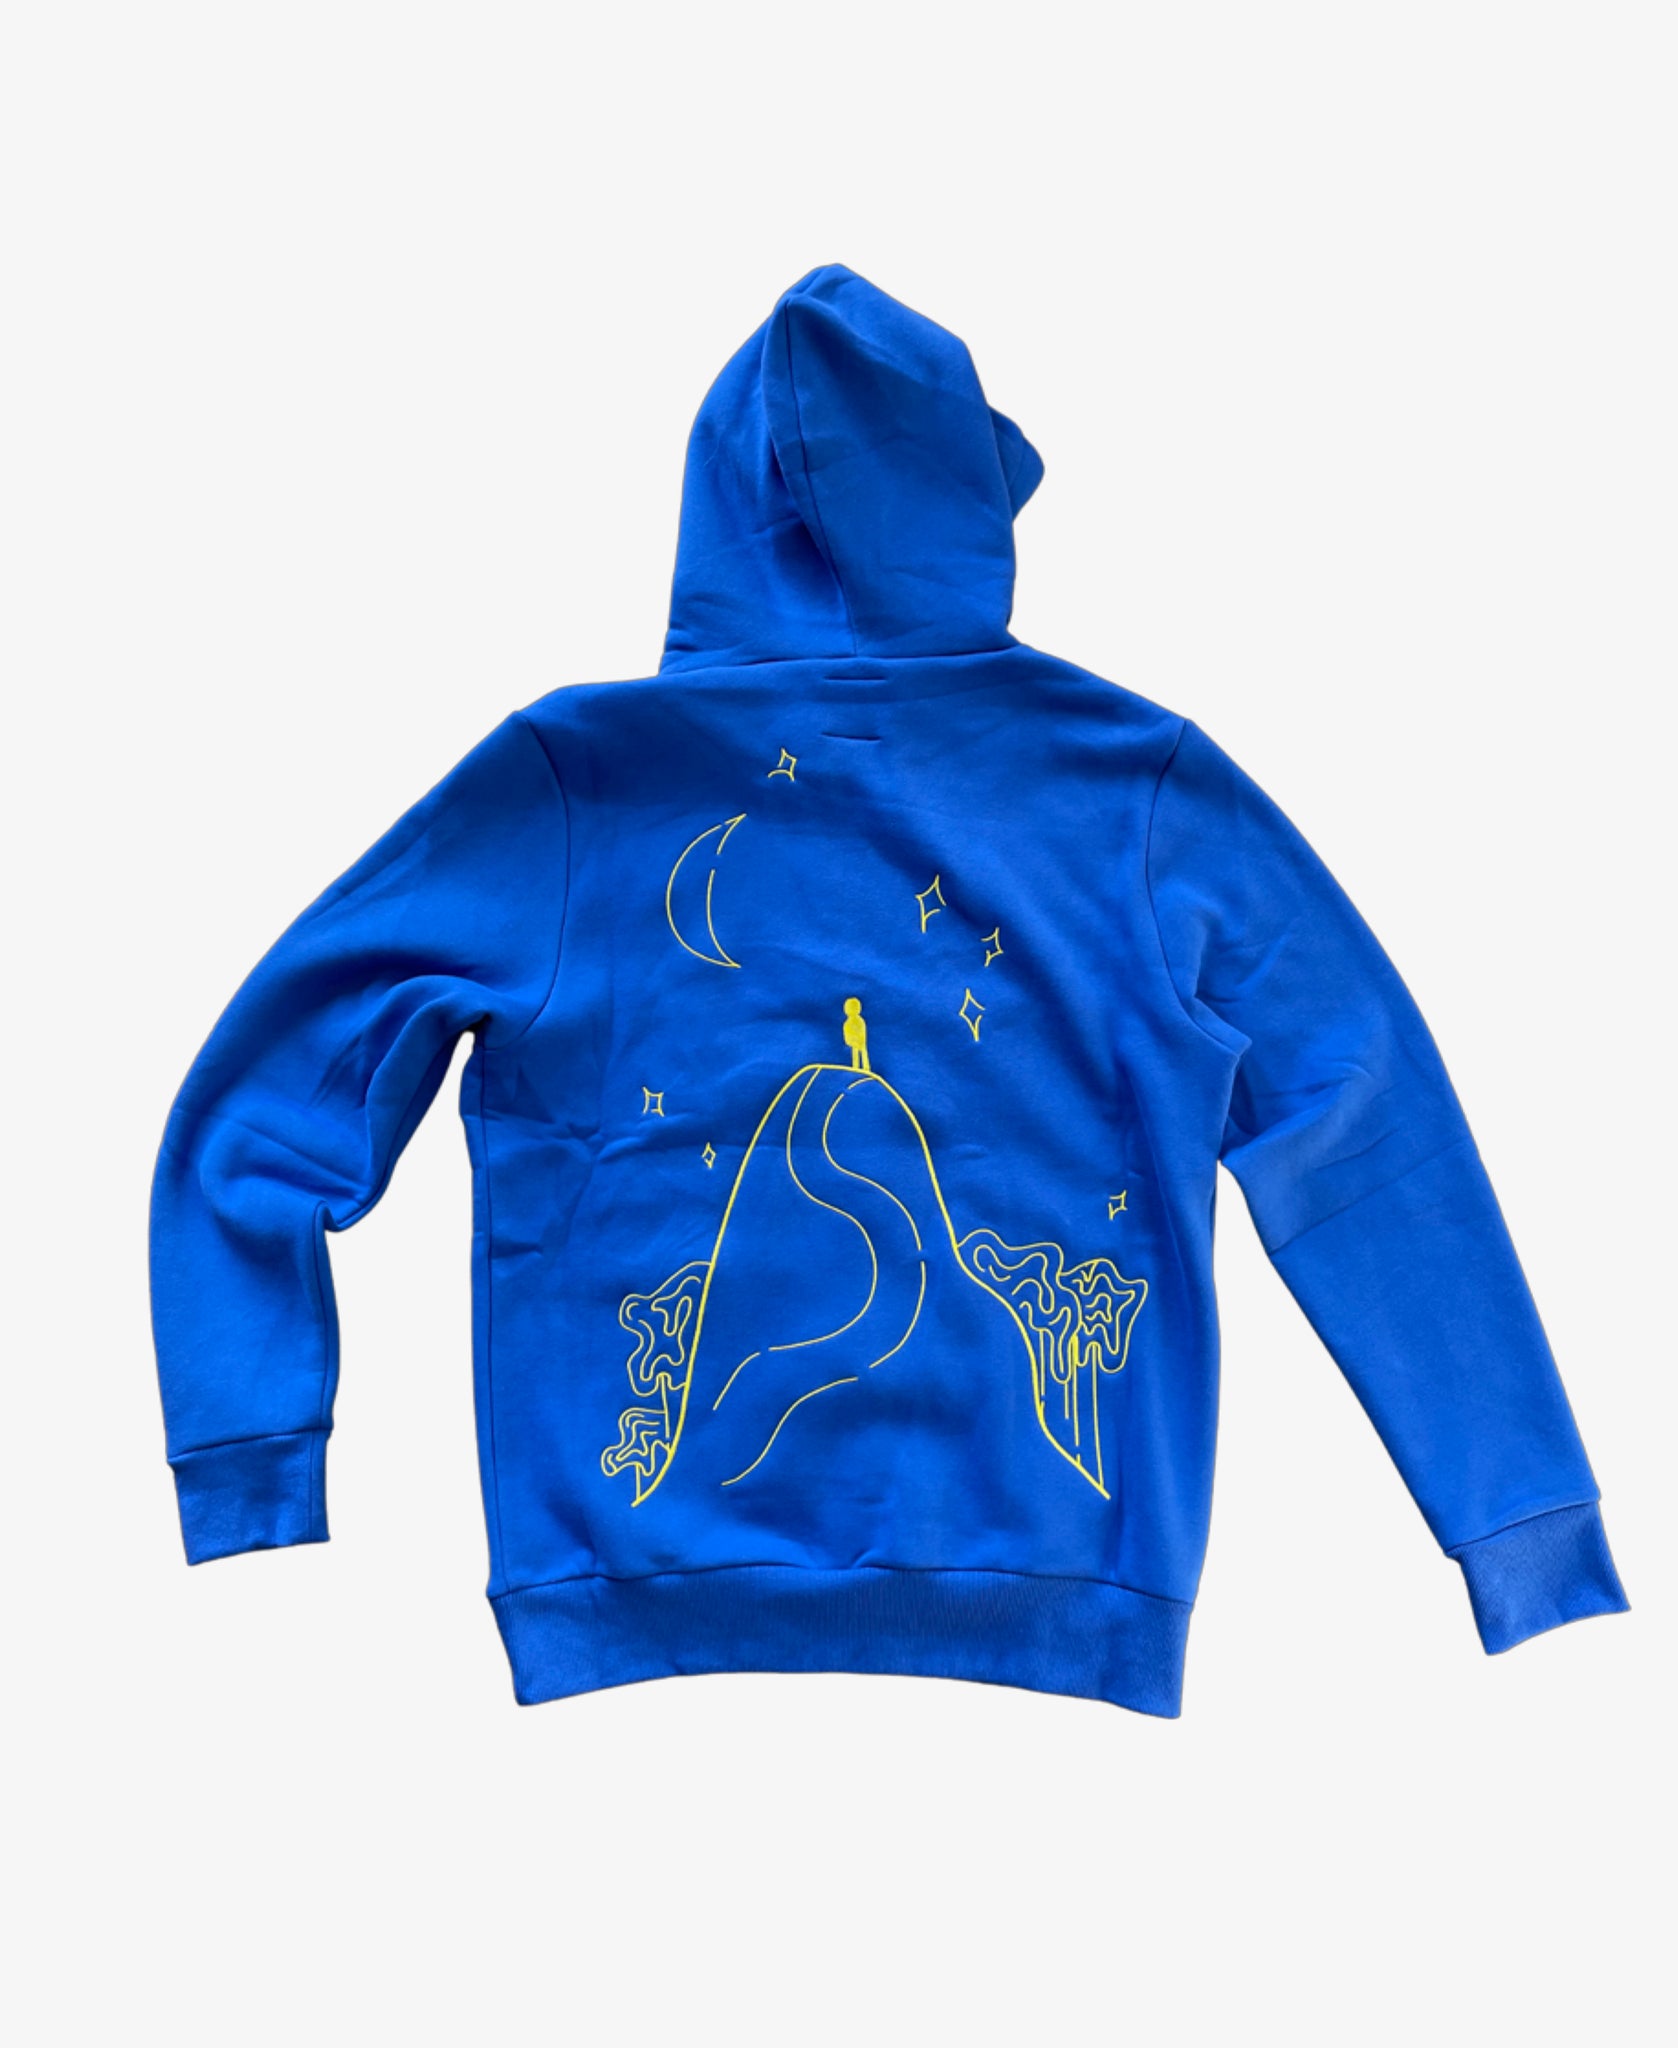 Fluid motion hoodie - Blue